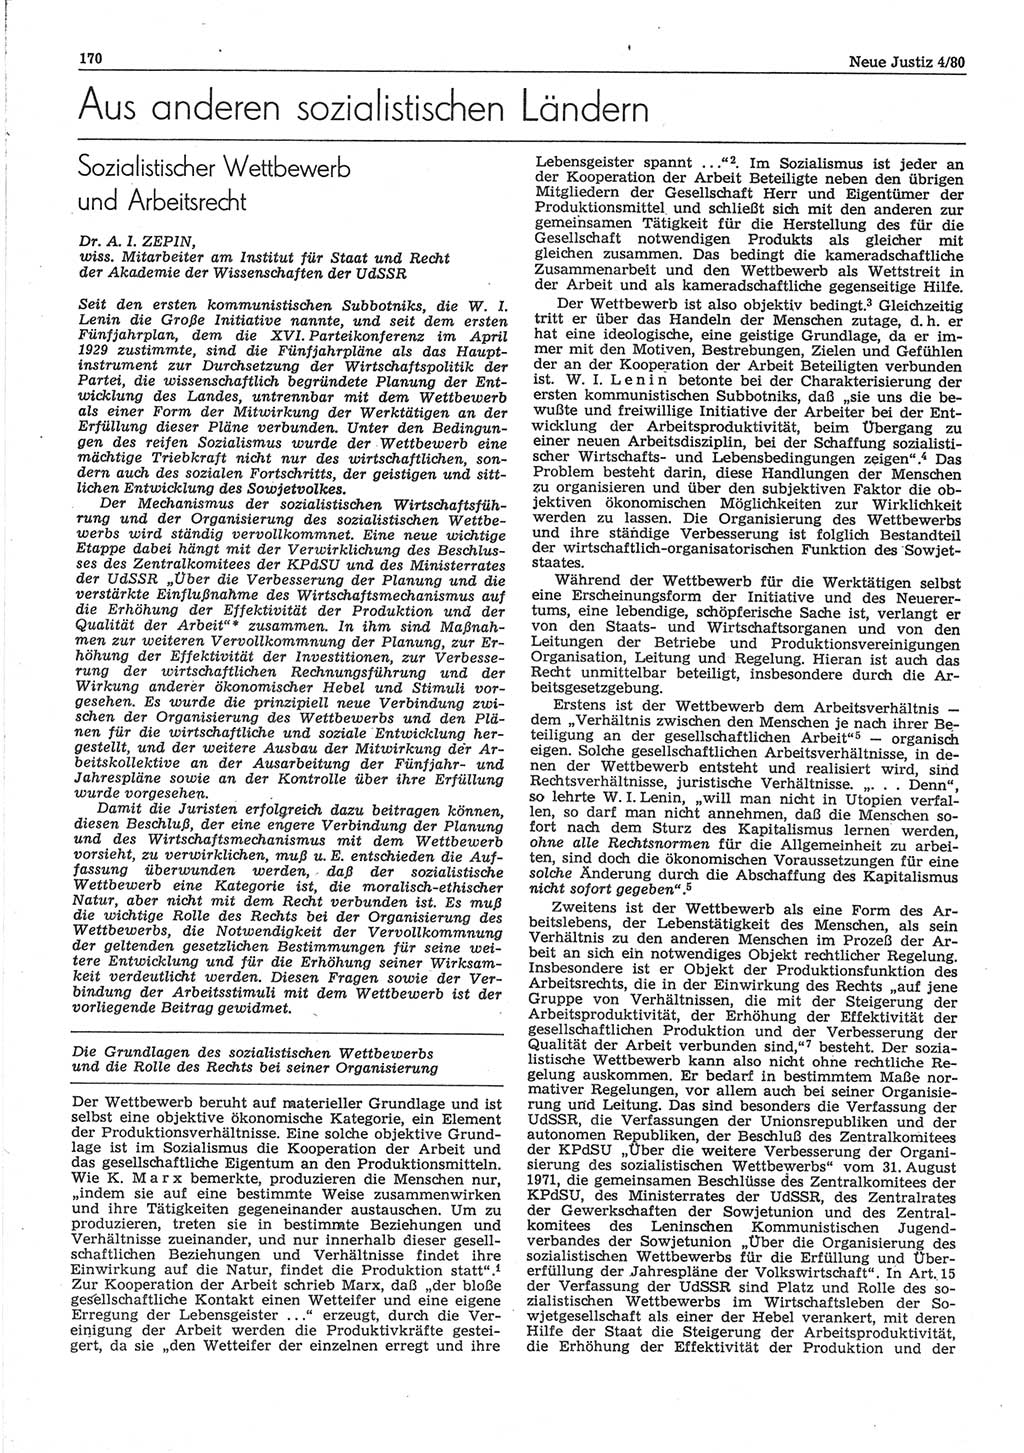 Neue Justiz (NJ), Zeitschrift für sozialistisches Recht und Gesetzlichkeit [Deutsche Demokratische Republik (DDR)], 34. Jahrgang 1980, Seite 170 (NJ DDR 1980, S. 170)